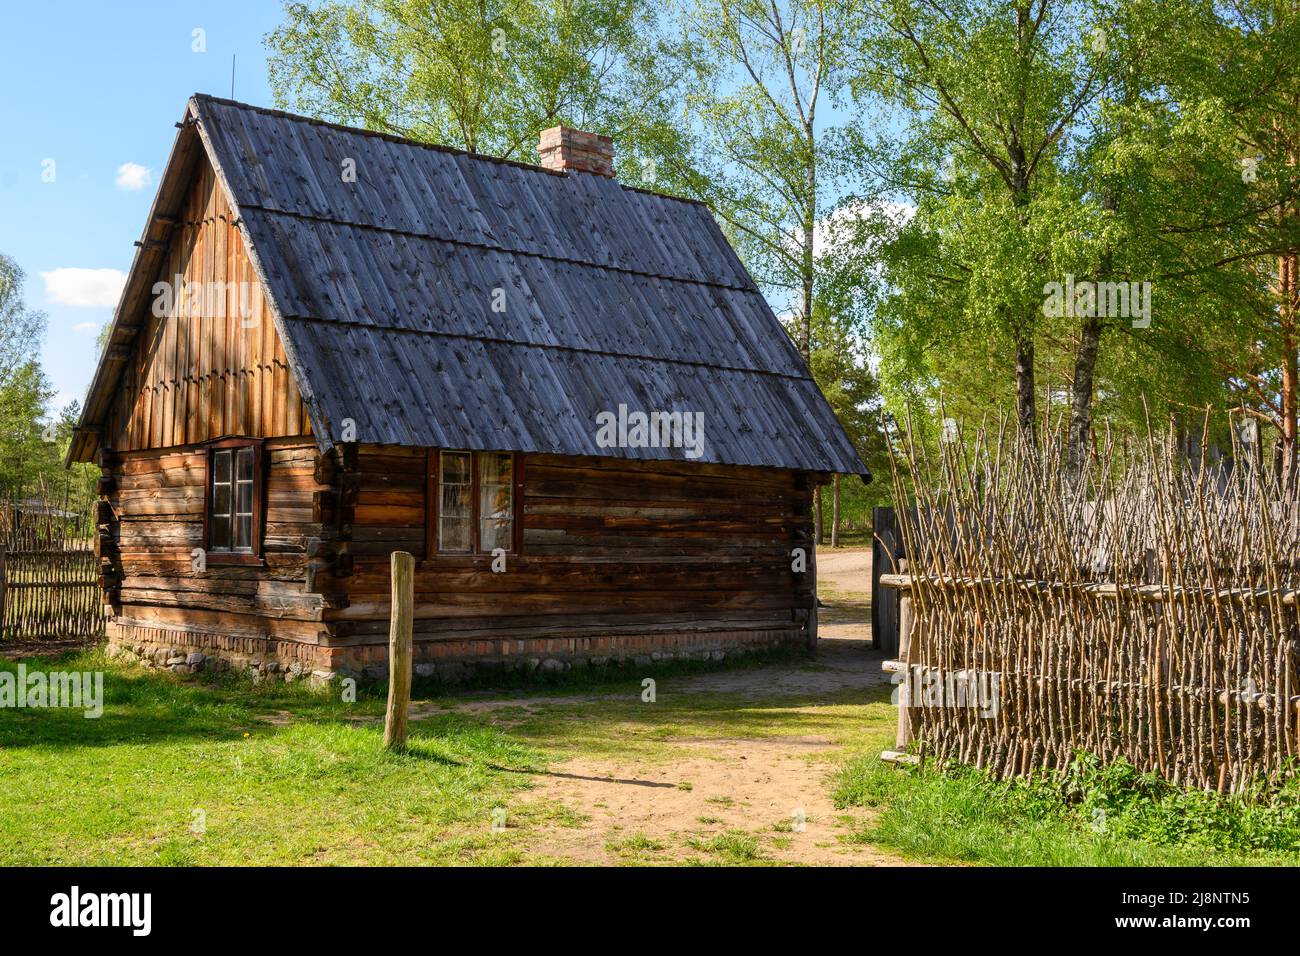 Wdzydze Kiszewskie, Poland - May 15, 2022: Wooden cottage in Kashubian Ethnographic Park in Wdzydze Kiszewskie Stock Photo